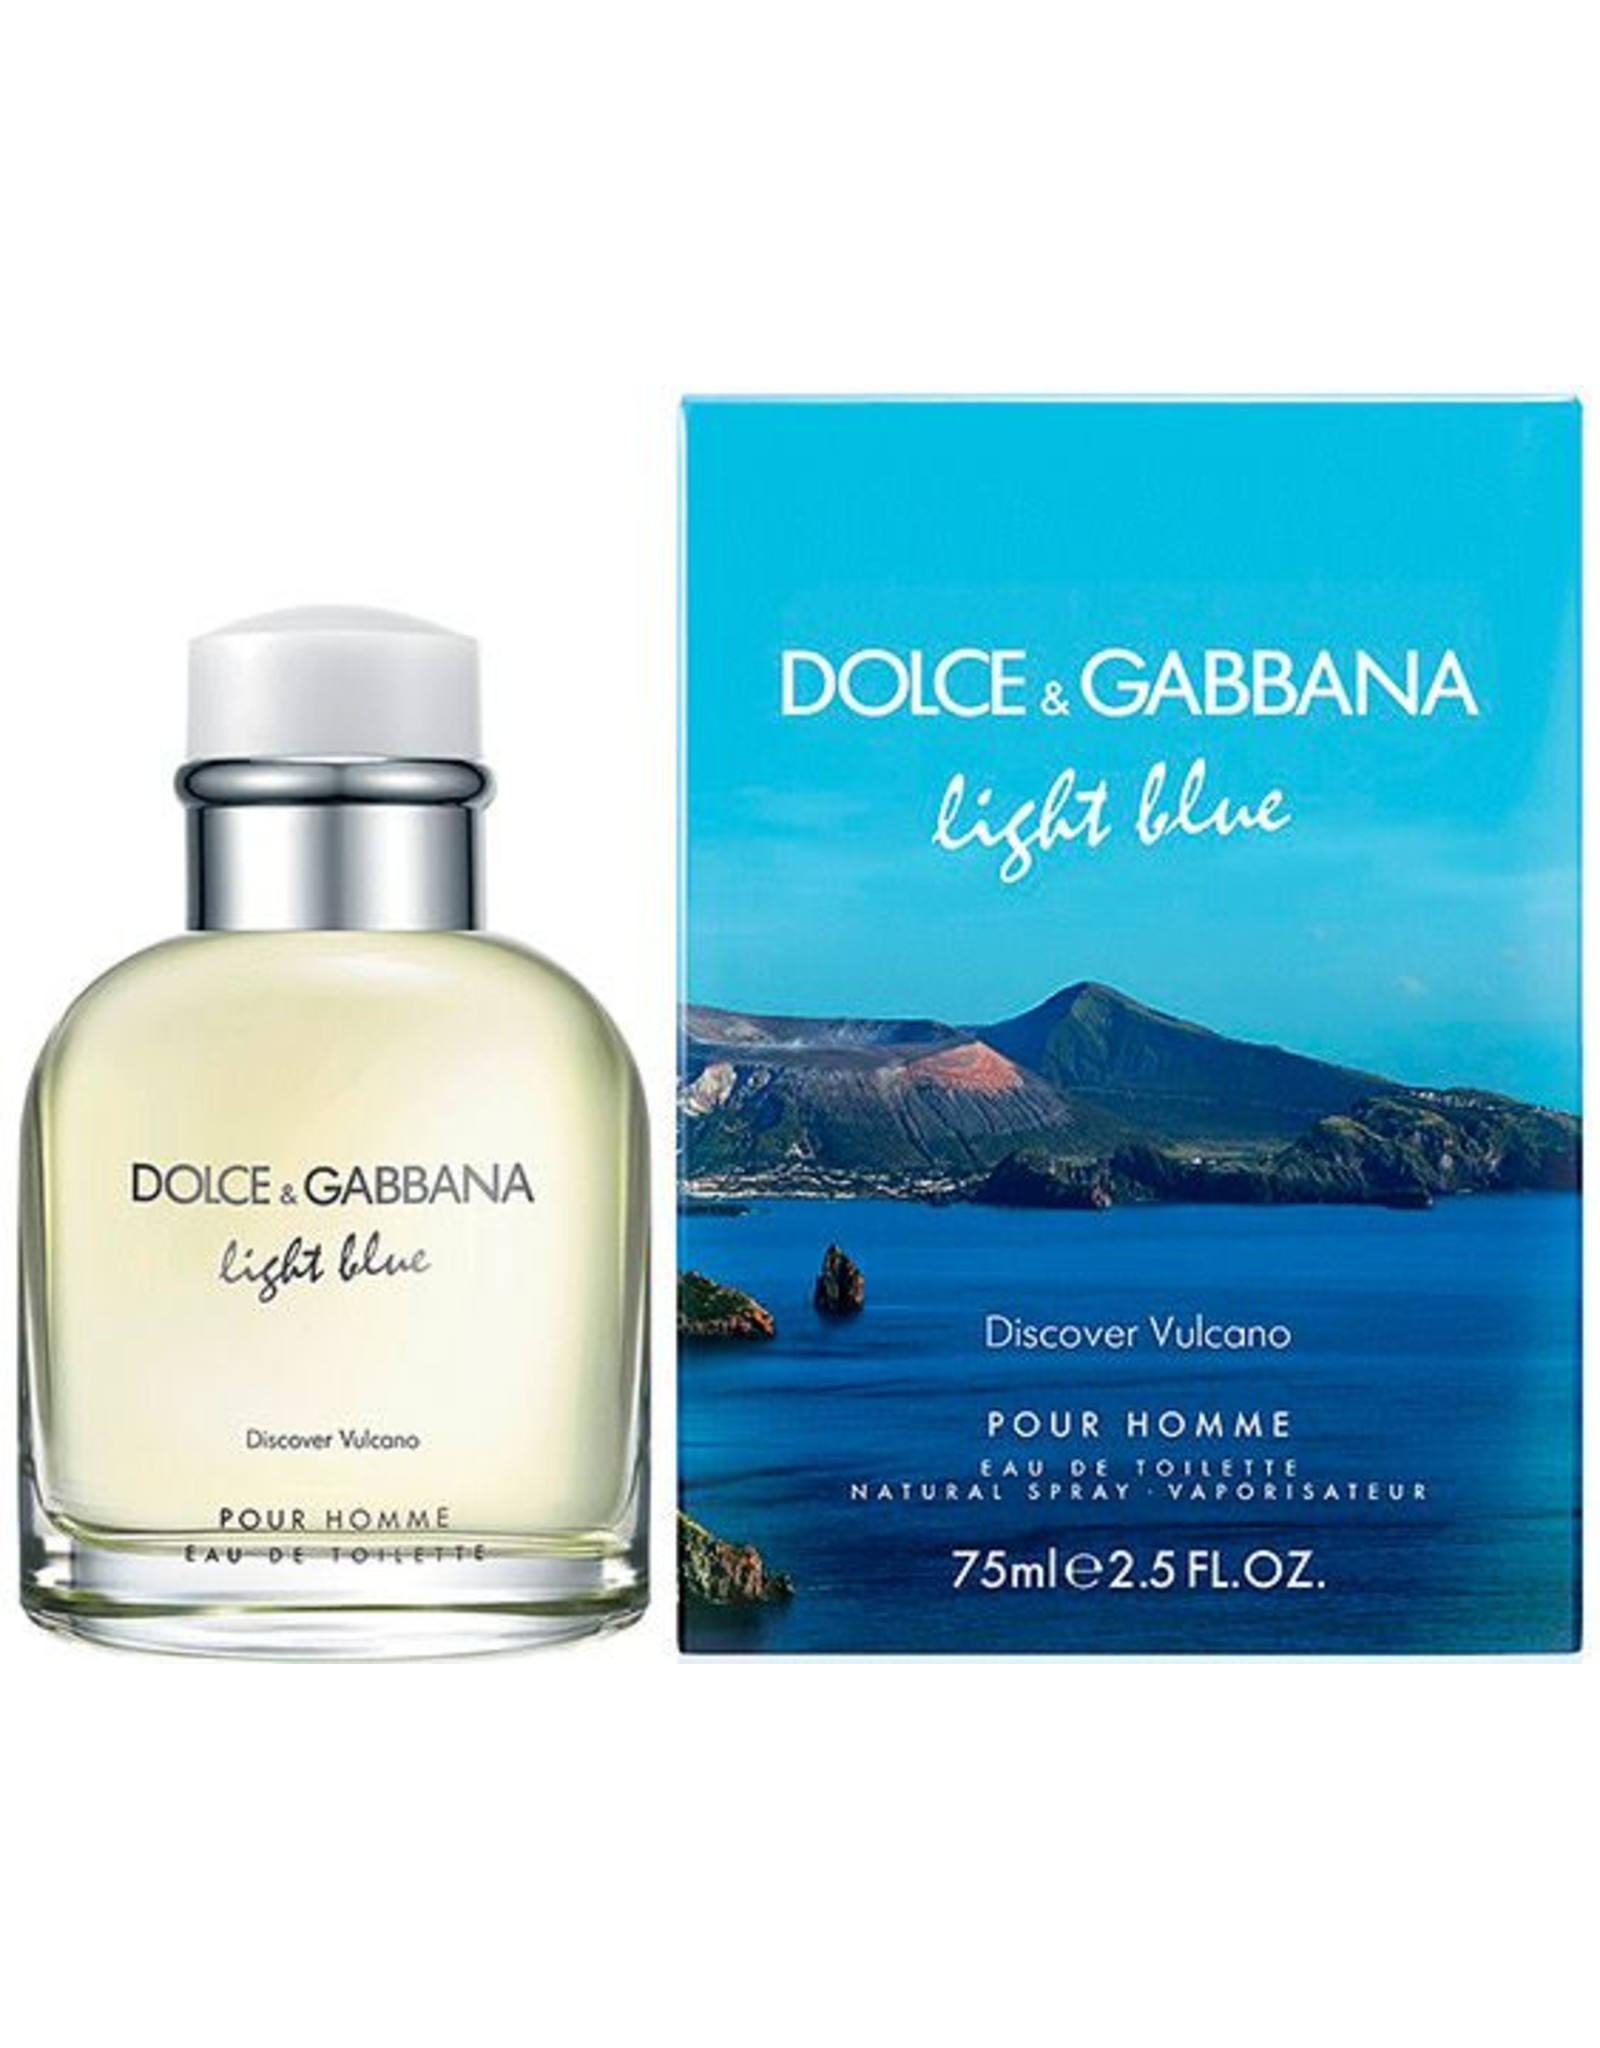 Туалетная вода дольче габбана лайт. Дольче Габбана Лайт Блю. Dolce & Gabbana Light Blue pour homme EDT, 125 ml. Dolce & Gabbana Light Blue discover Vulcano pour homme. Мужская туалетная вода Dolce & Gabbana Light Blue pour homme 125 мл.